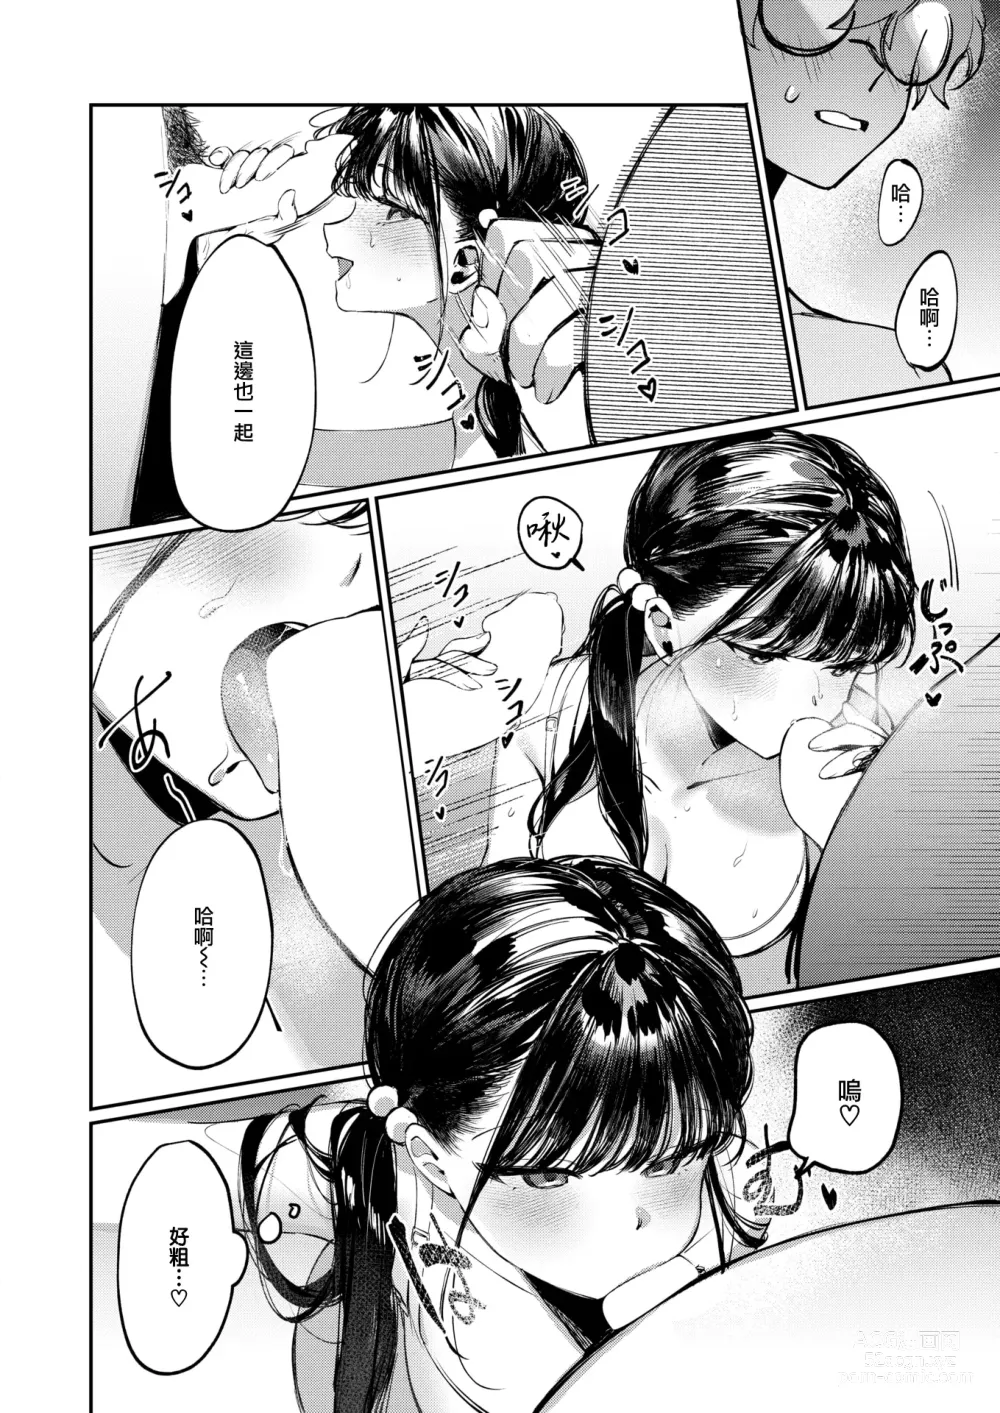 Page 11 of manga Doutei Reaper Sotsugyou Ryokou